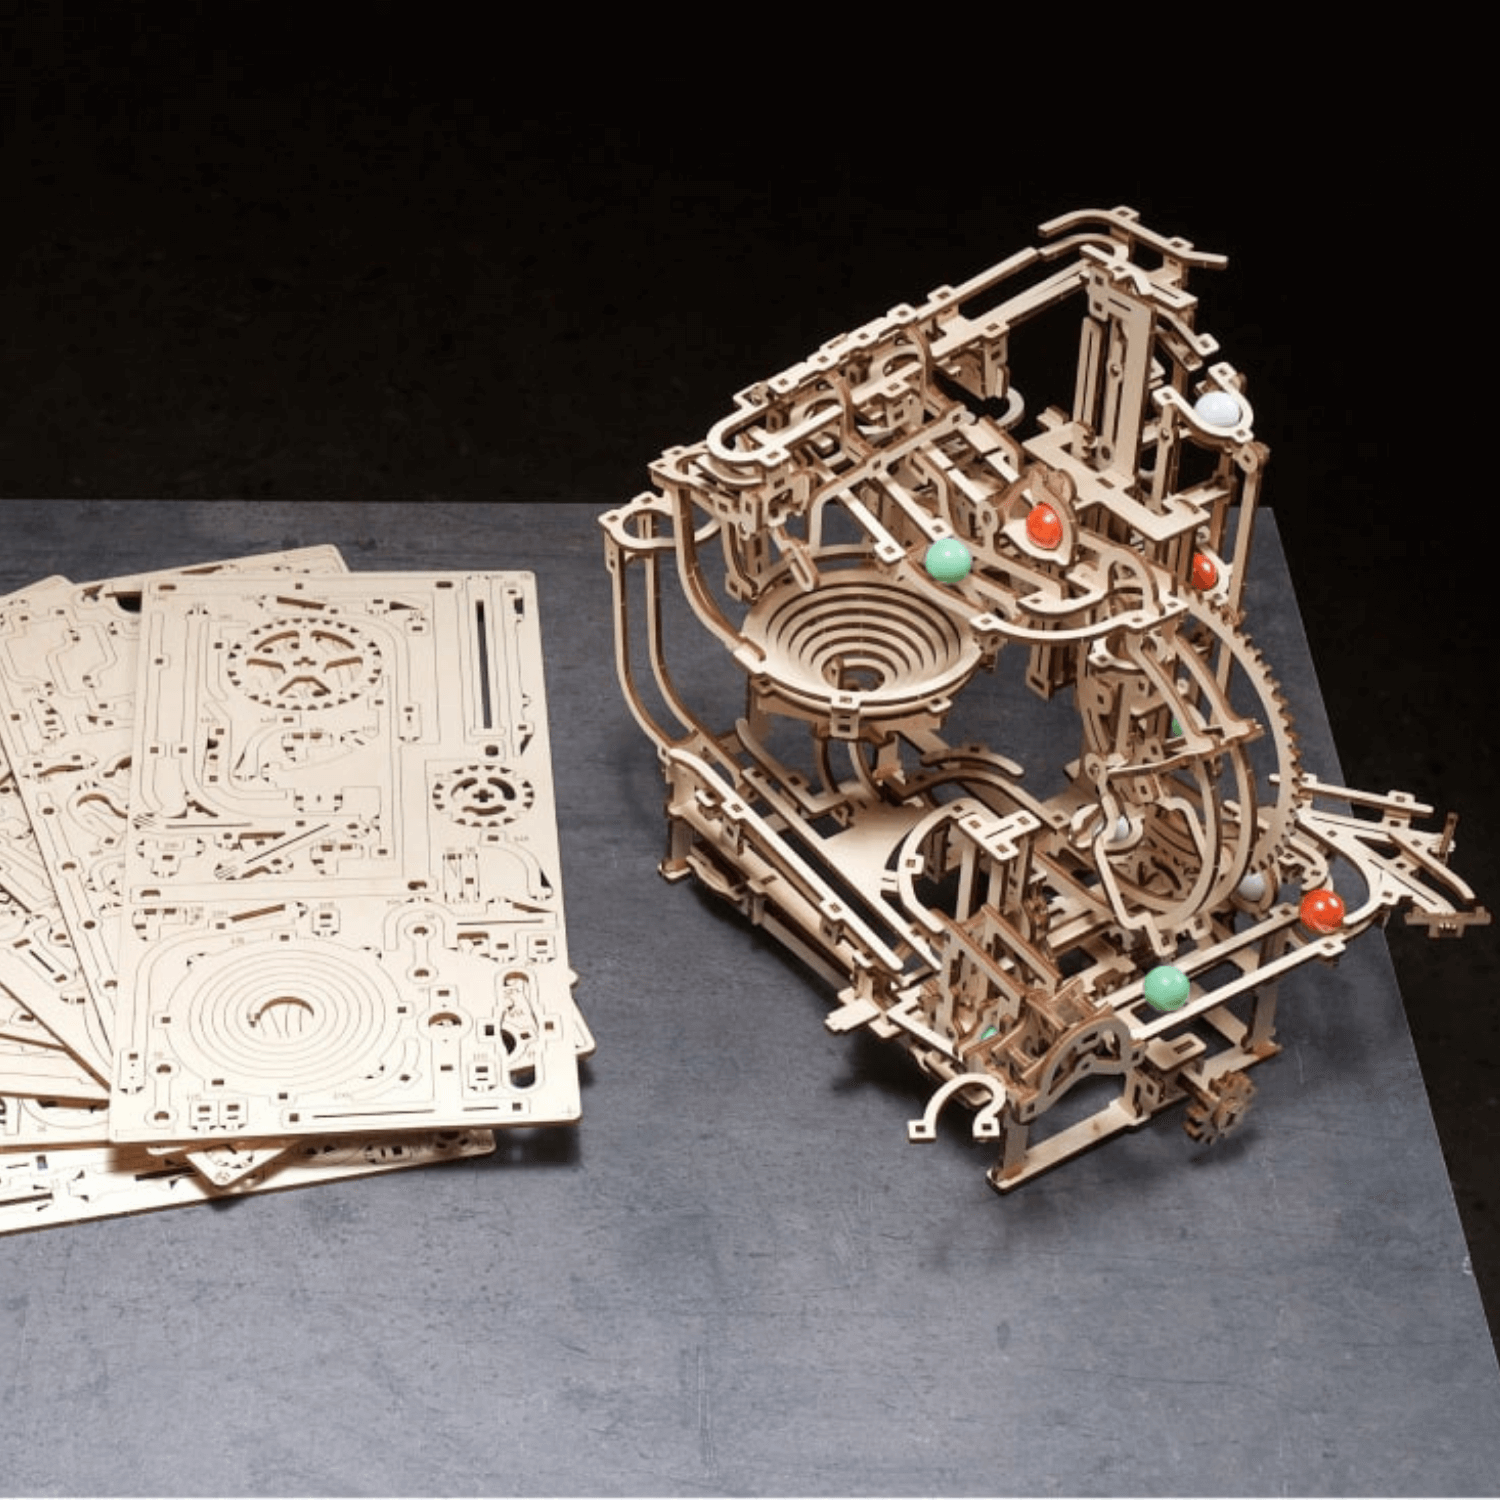 Rolife Puzzle 3D Maquette en Bois a Construire pour Adulte Enfants, Kits de  Modè